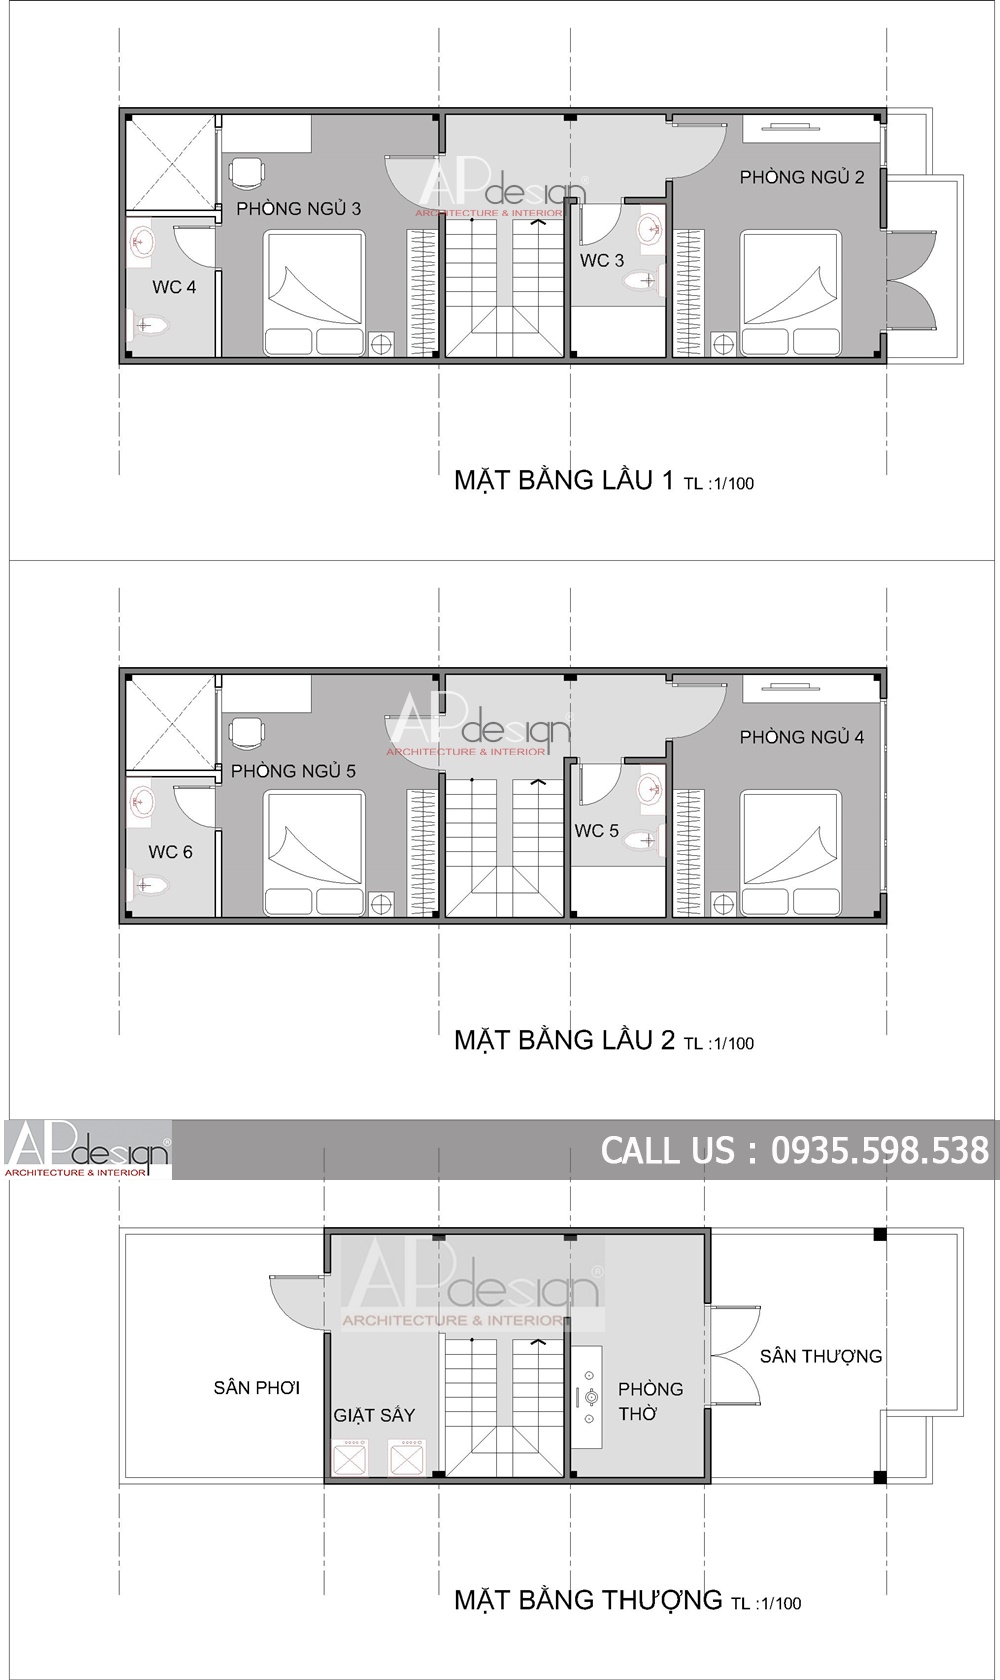 Mat Bang nha pho 4x12 (2) - Thiết kế nhà đẹp APdesign